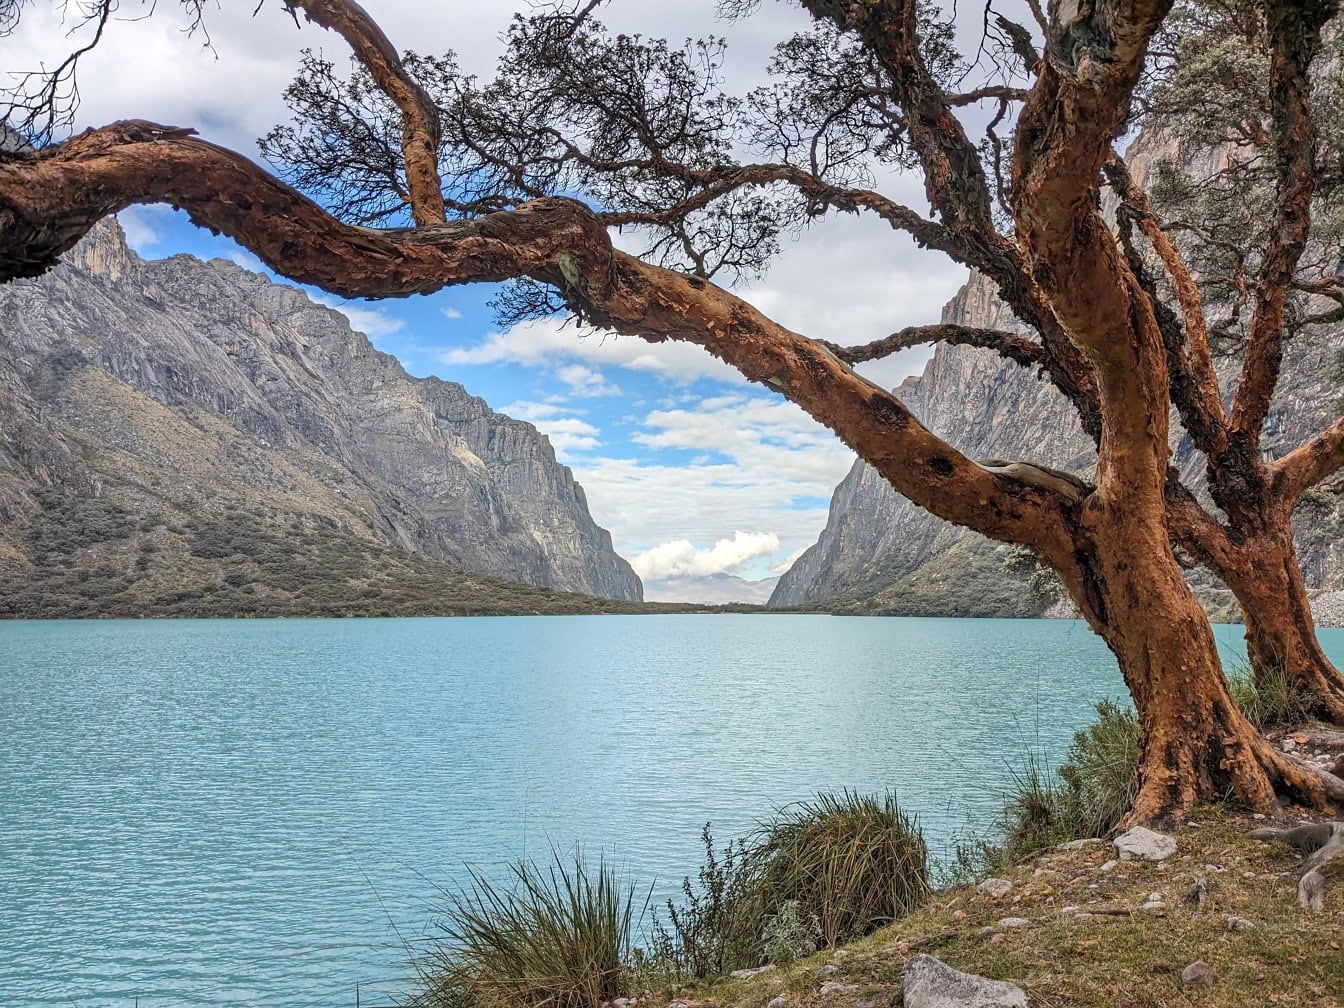 Cây cối trên bờ hồ Llanganuco trong một công viên tự nhiên gần Cordillera Blanca ở Andes của Peru